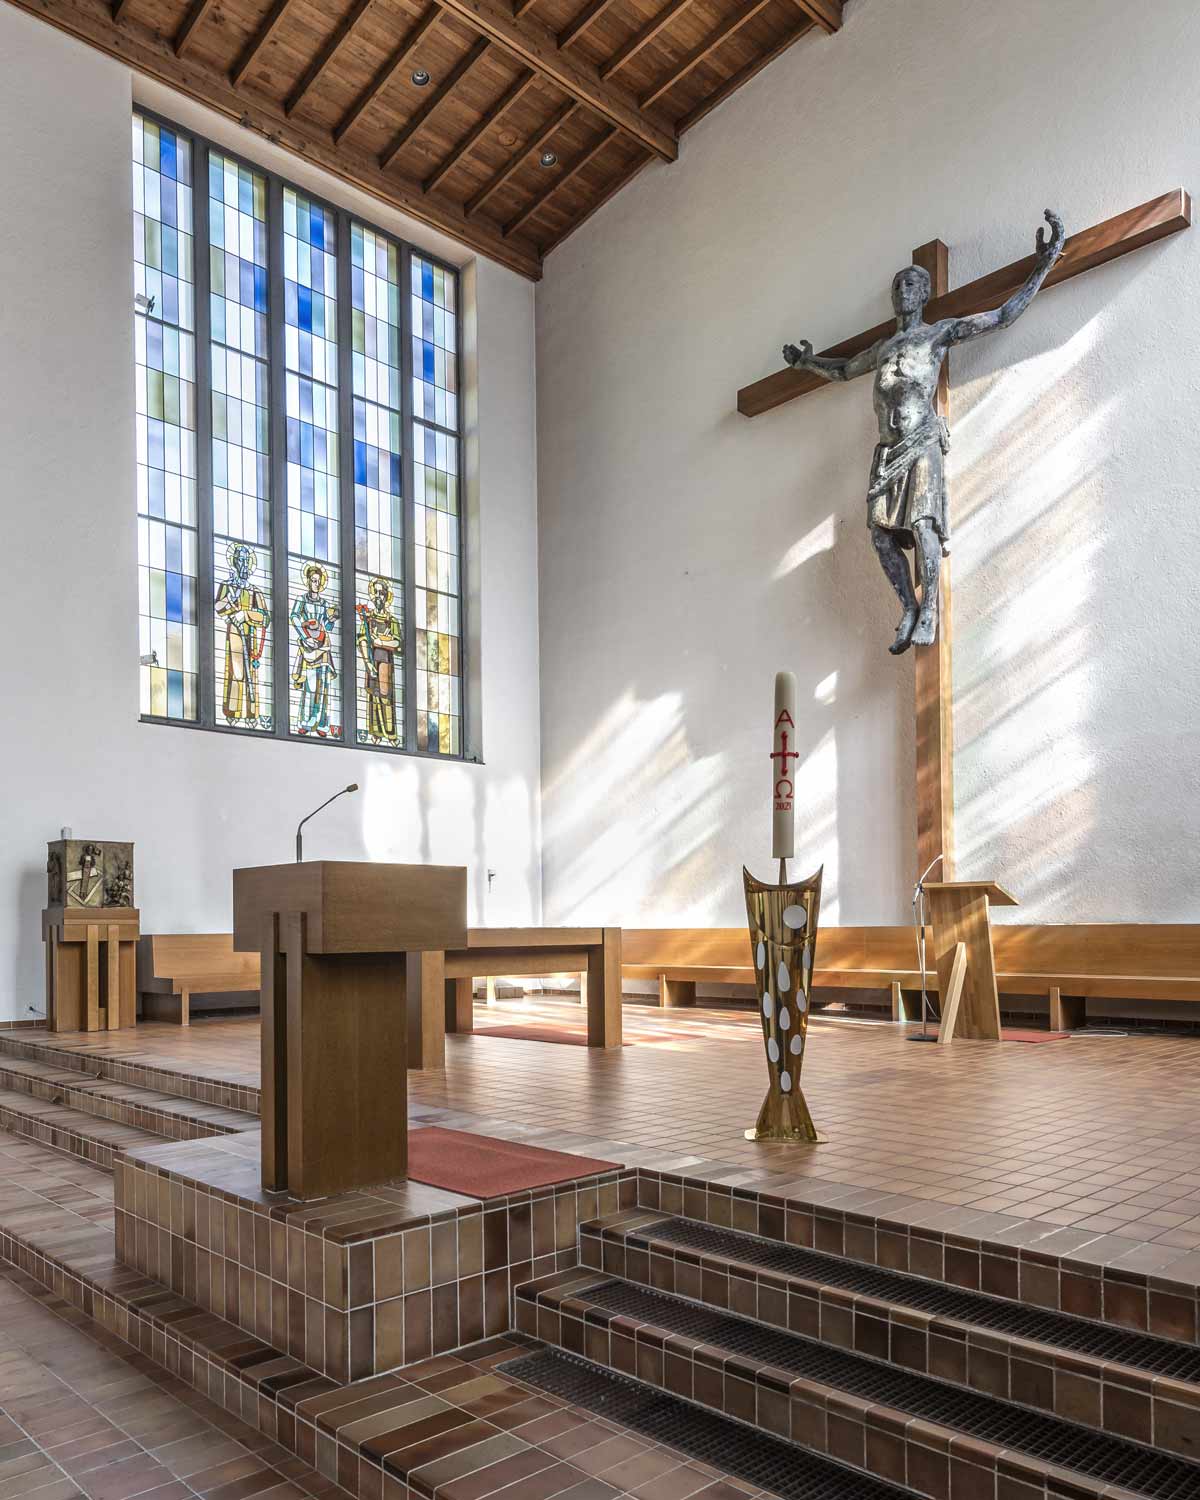 Altarbereich, Pfarrkirche Gut Hirt in Zug. Fotografiert von Regine Giesecke Architecture Photography GmbH